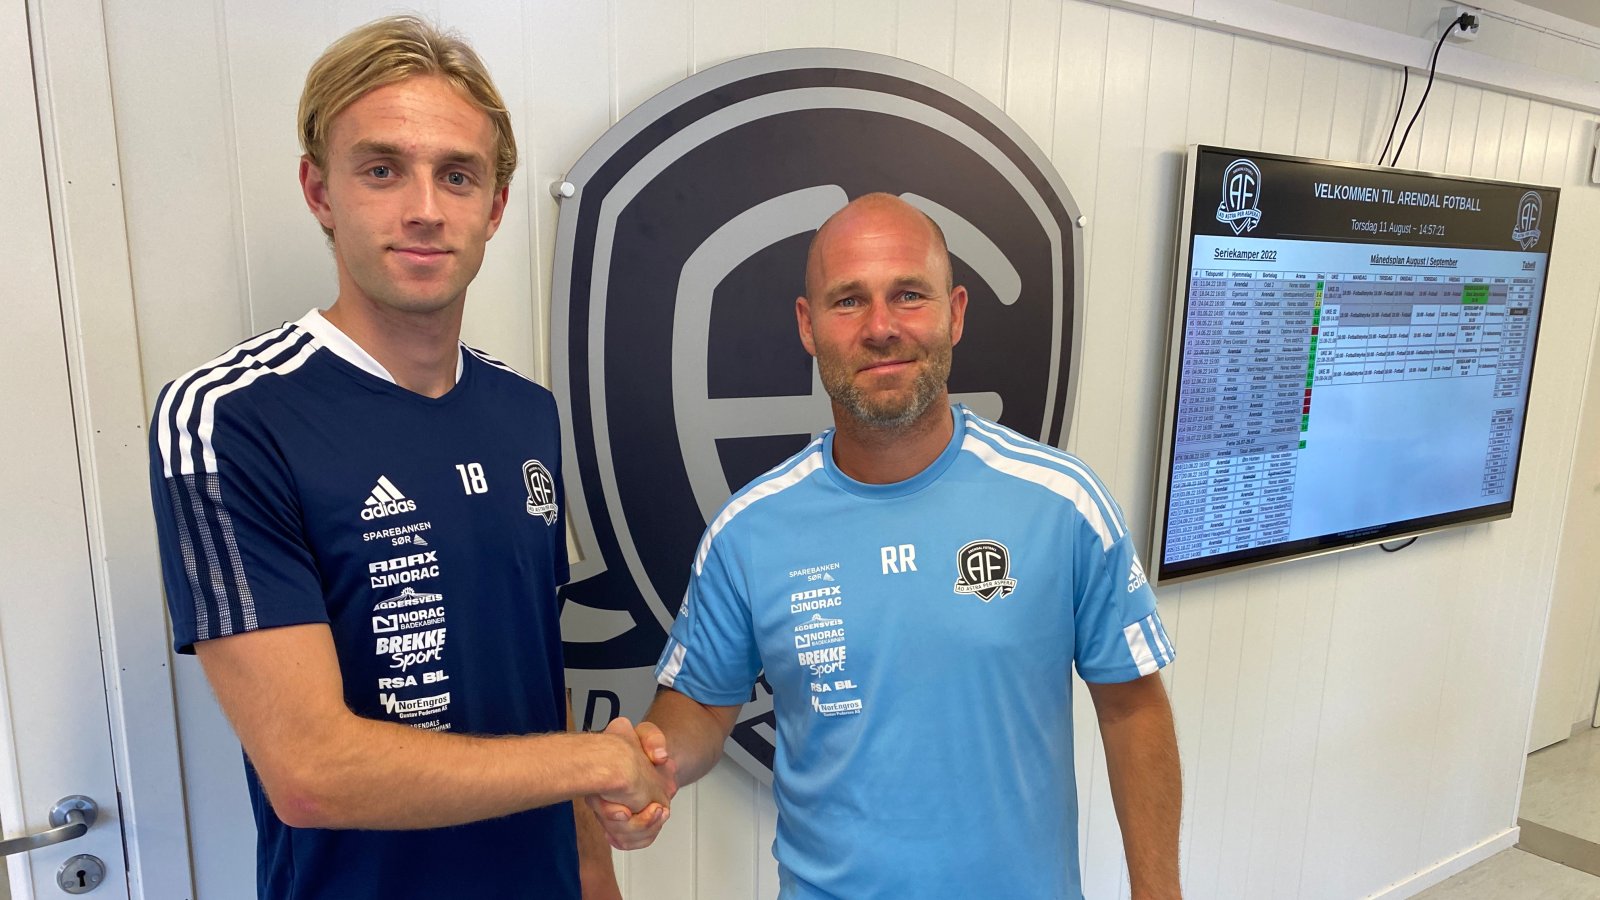 Arendal-trener Roger Risholt ønsker Sander Marthinussen velkommen til Arendal Fotball.